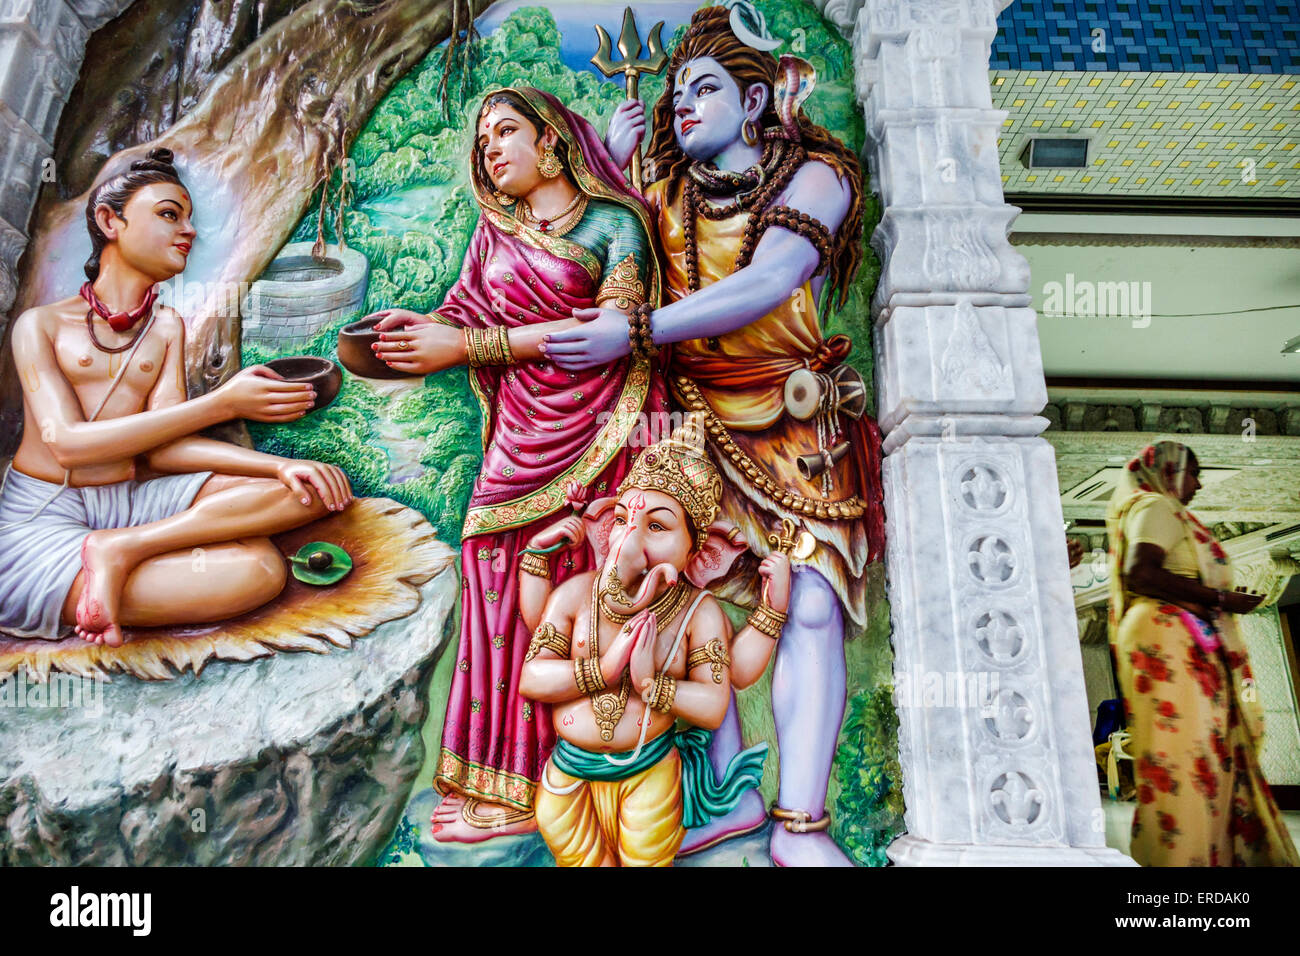 Mumbai India,Mahalakshmi Nagar,Bhulabhai Desai Marg,Road,Shree Swaminarayan Temple,Hindu,bindi,entrance,art,artwork,bindi,India150301245 Stock Photo